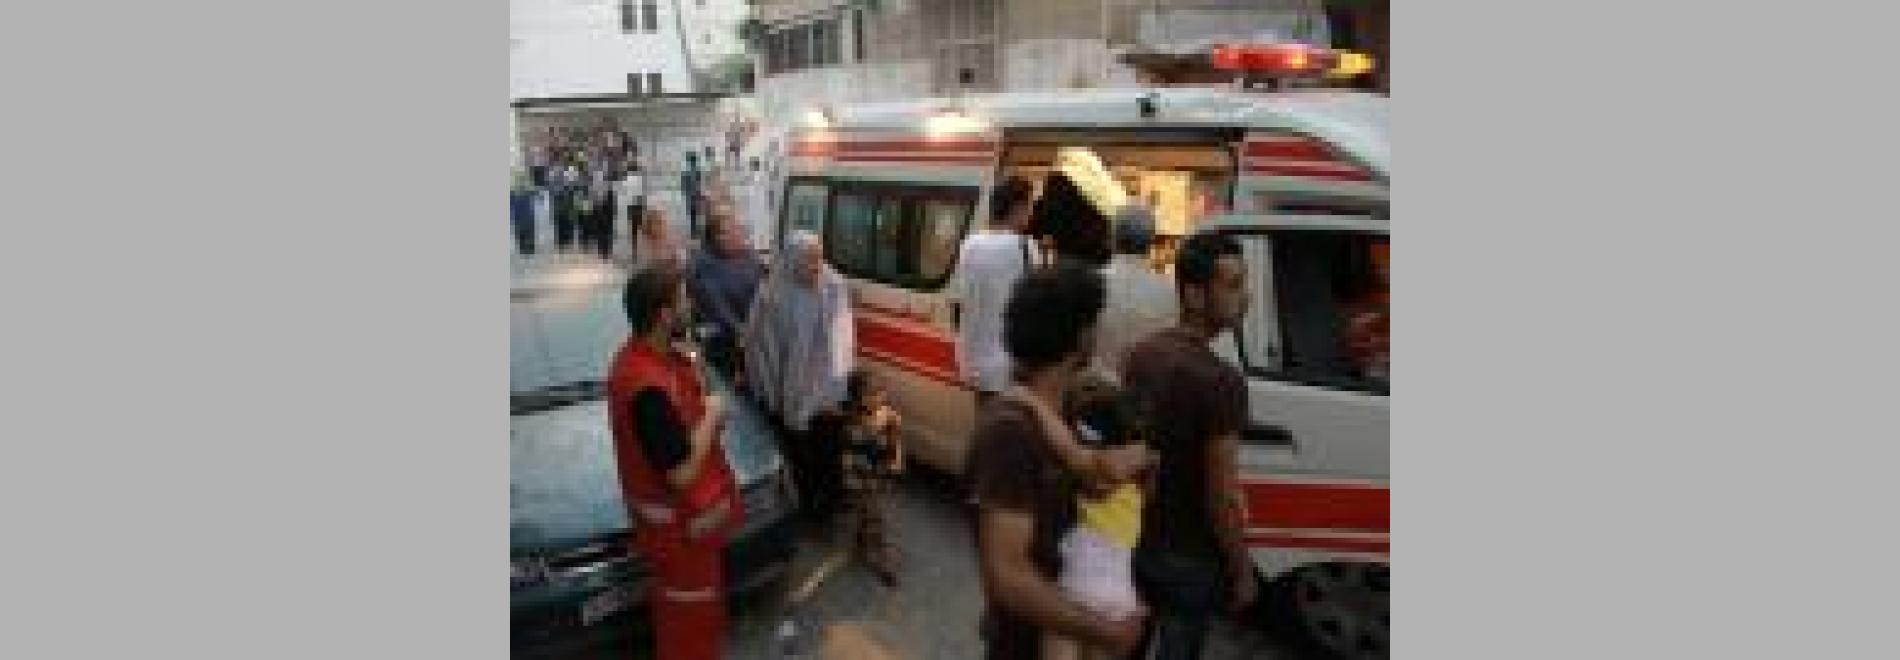 Ambulanse, amb presentació a càrrec de Mohamed Jabaly / Ambulància (Mohamed Jabaly, 2017) 